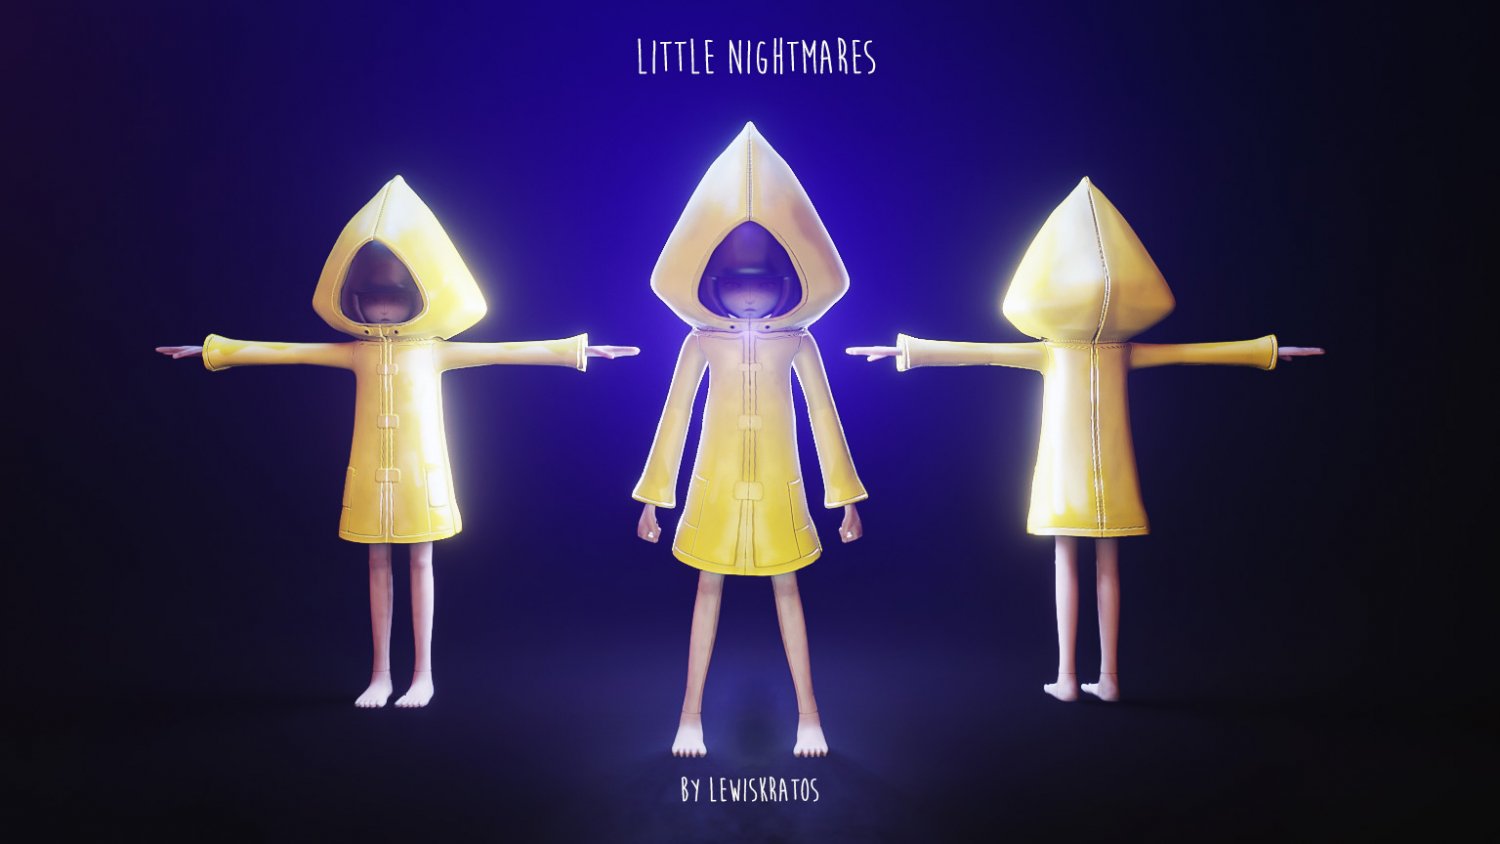 Littlenightmares 3D models - Sketchfab